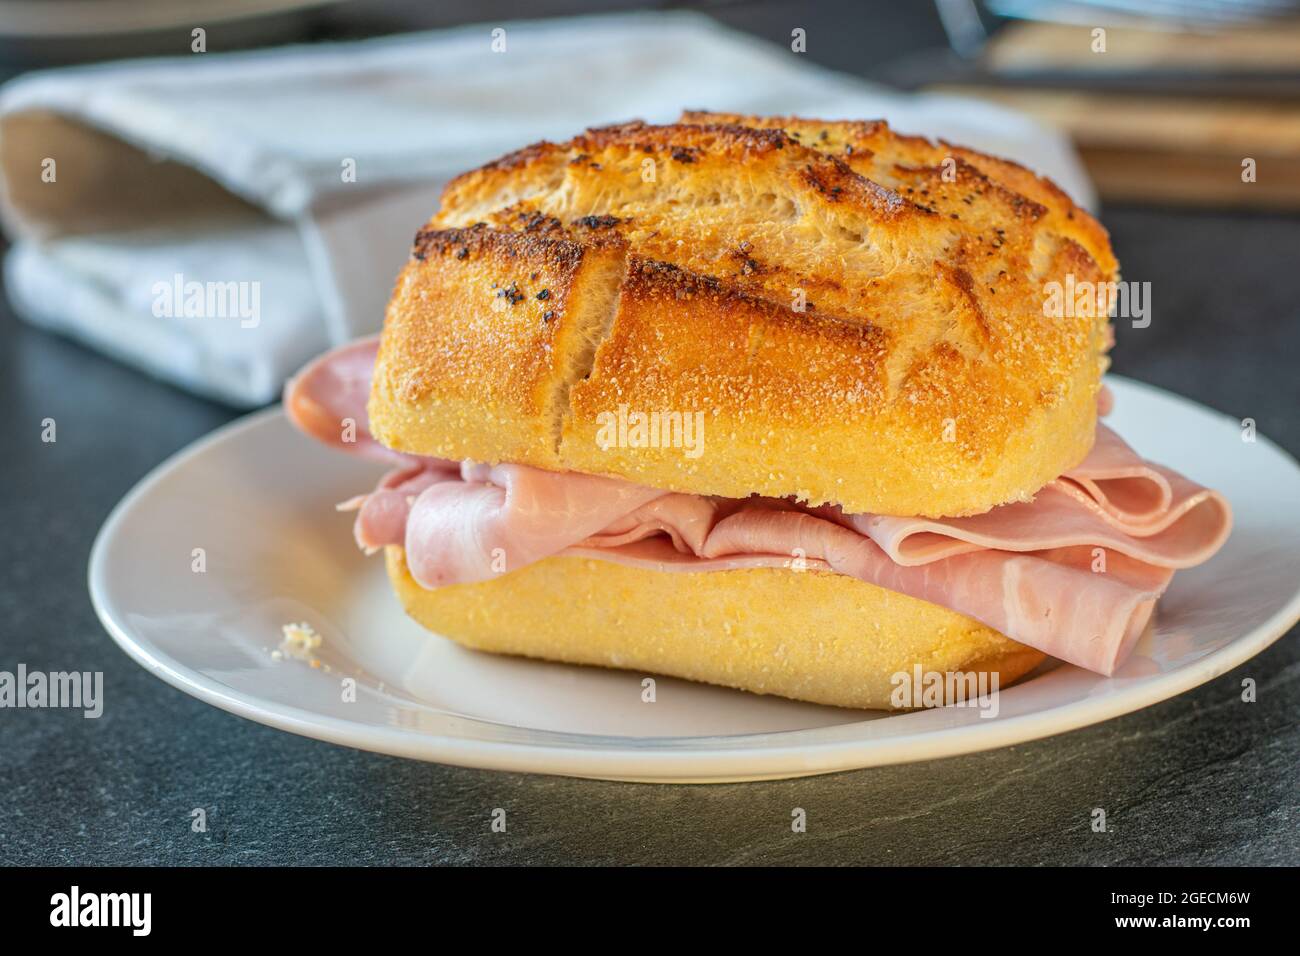 Sandwich au poivre allemand rustique et traditionnel et pain salé recouvert de fines tranches de jambon et servi sur une assiette Banque D'Images